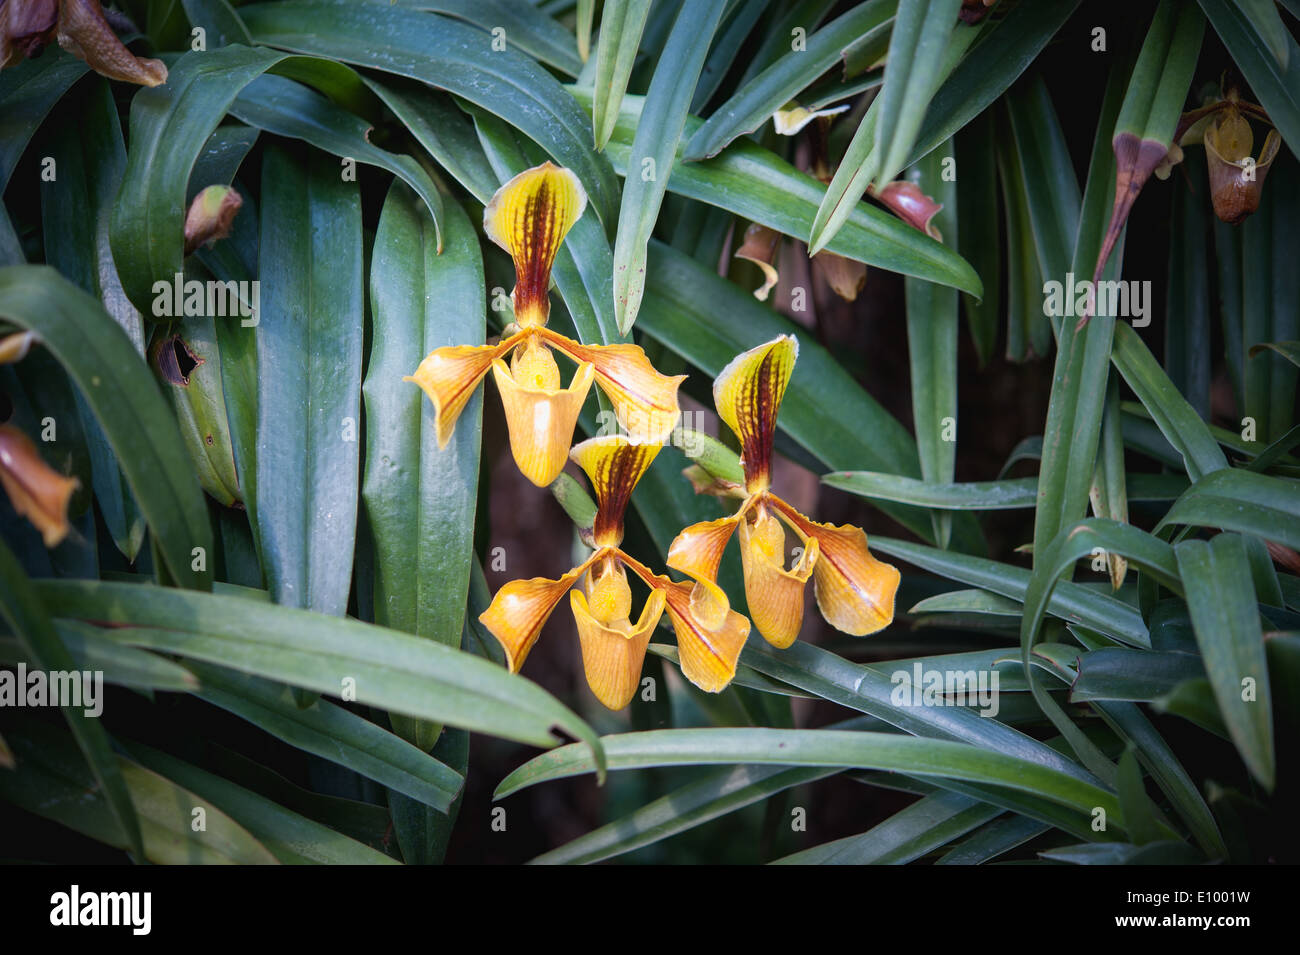 Lady’s Slipper or paphiopedilum villosum wild orchid in Thailand Stock Photo